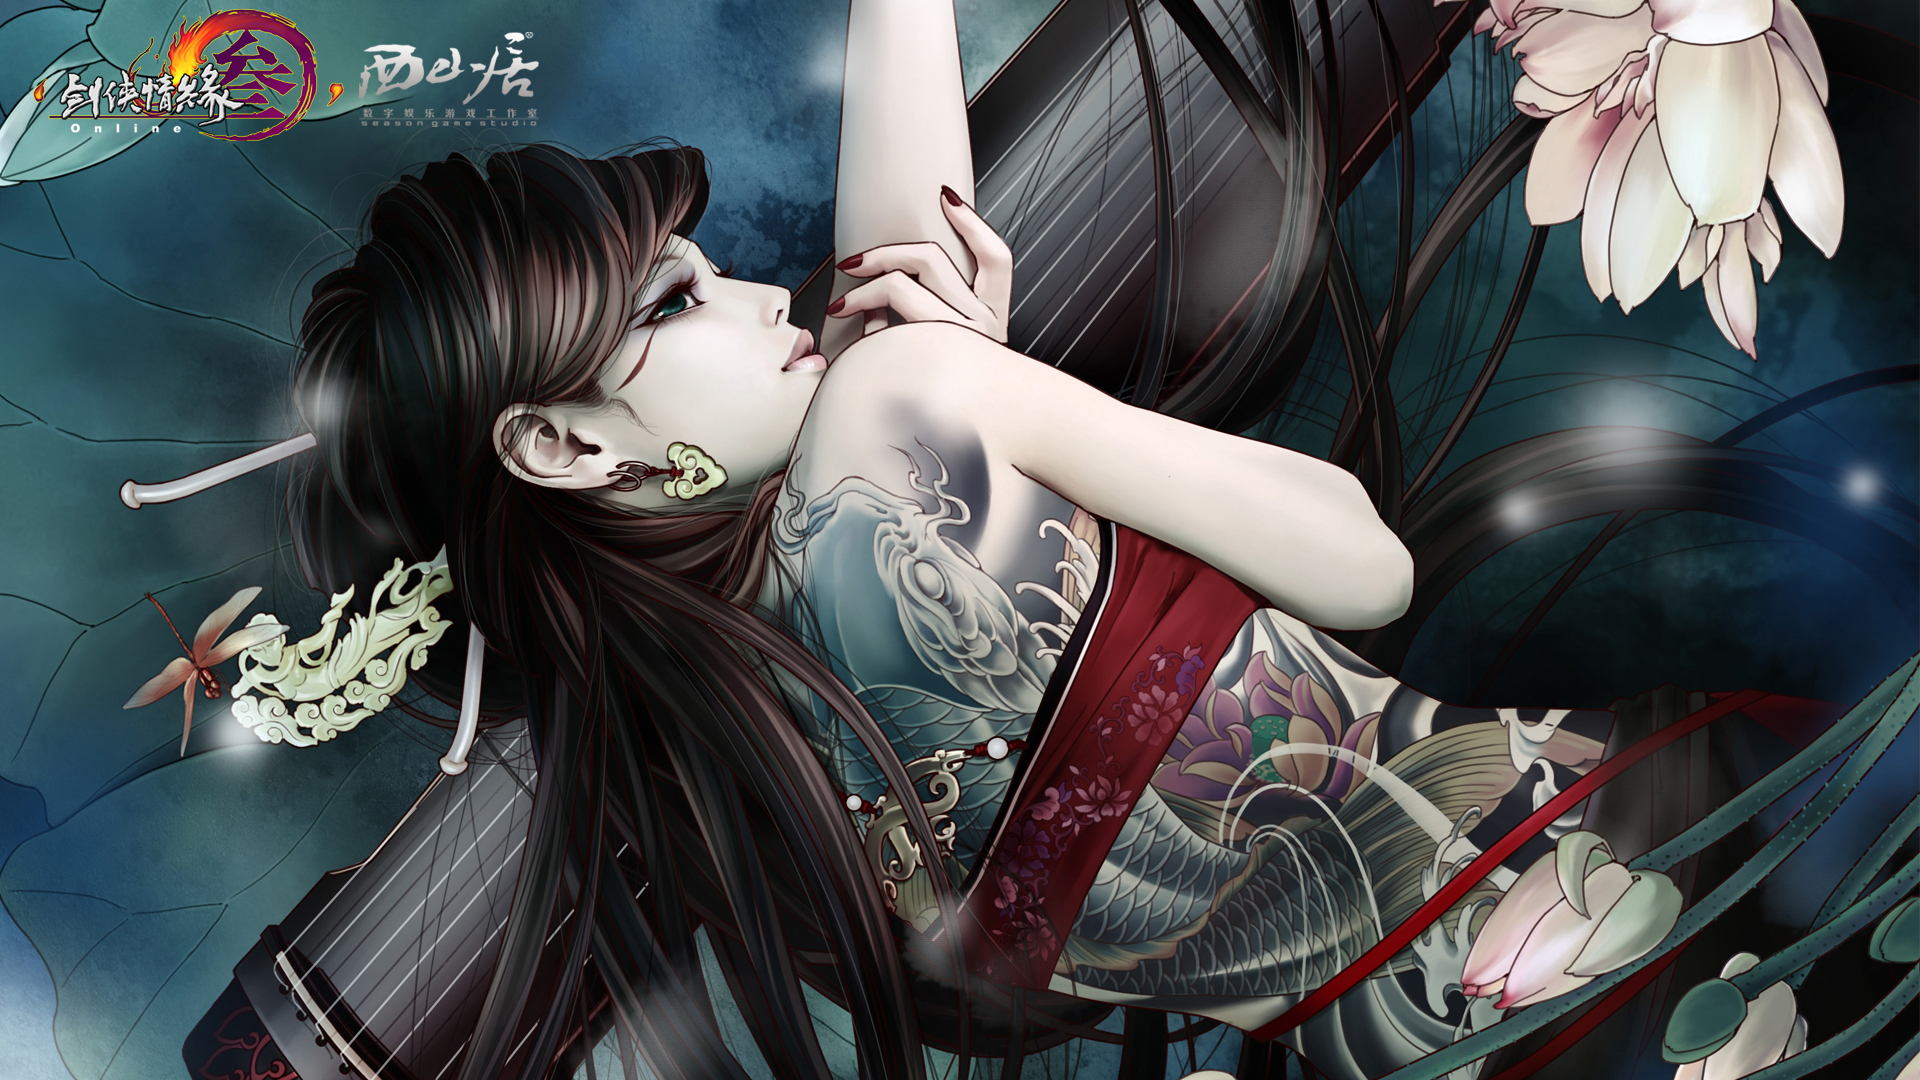 Jianxia Qingyuan Wallpaper Tattoo Girl 1080p From Shadow Of Death